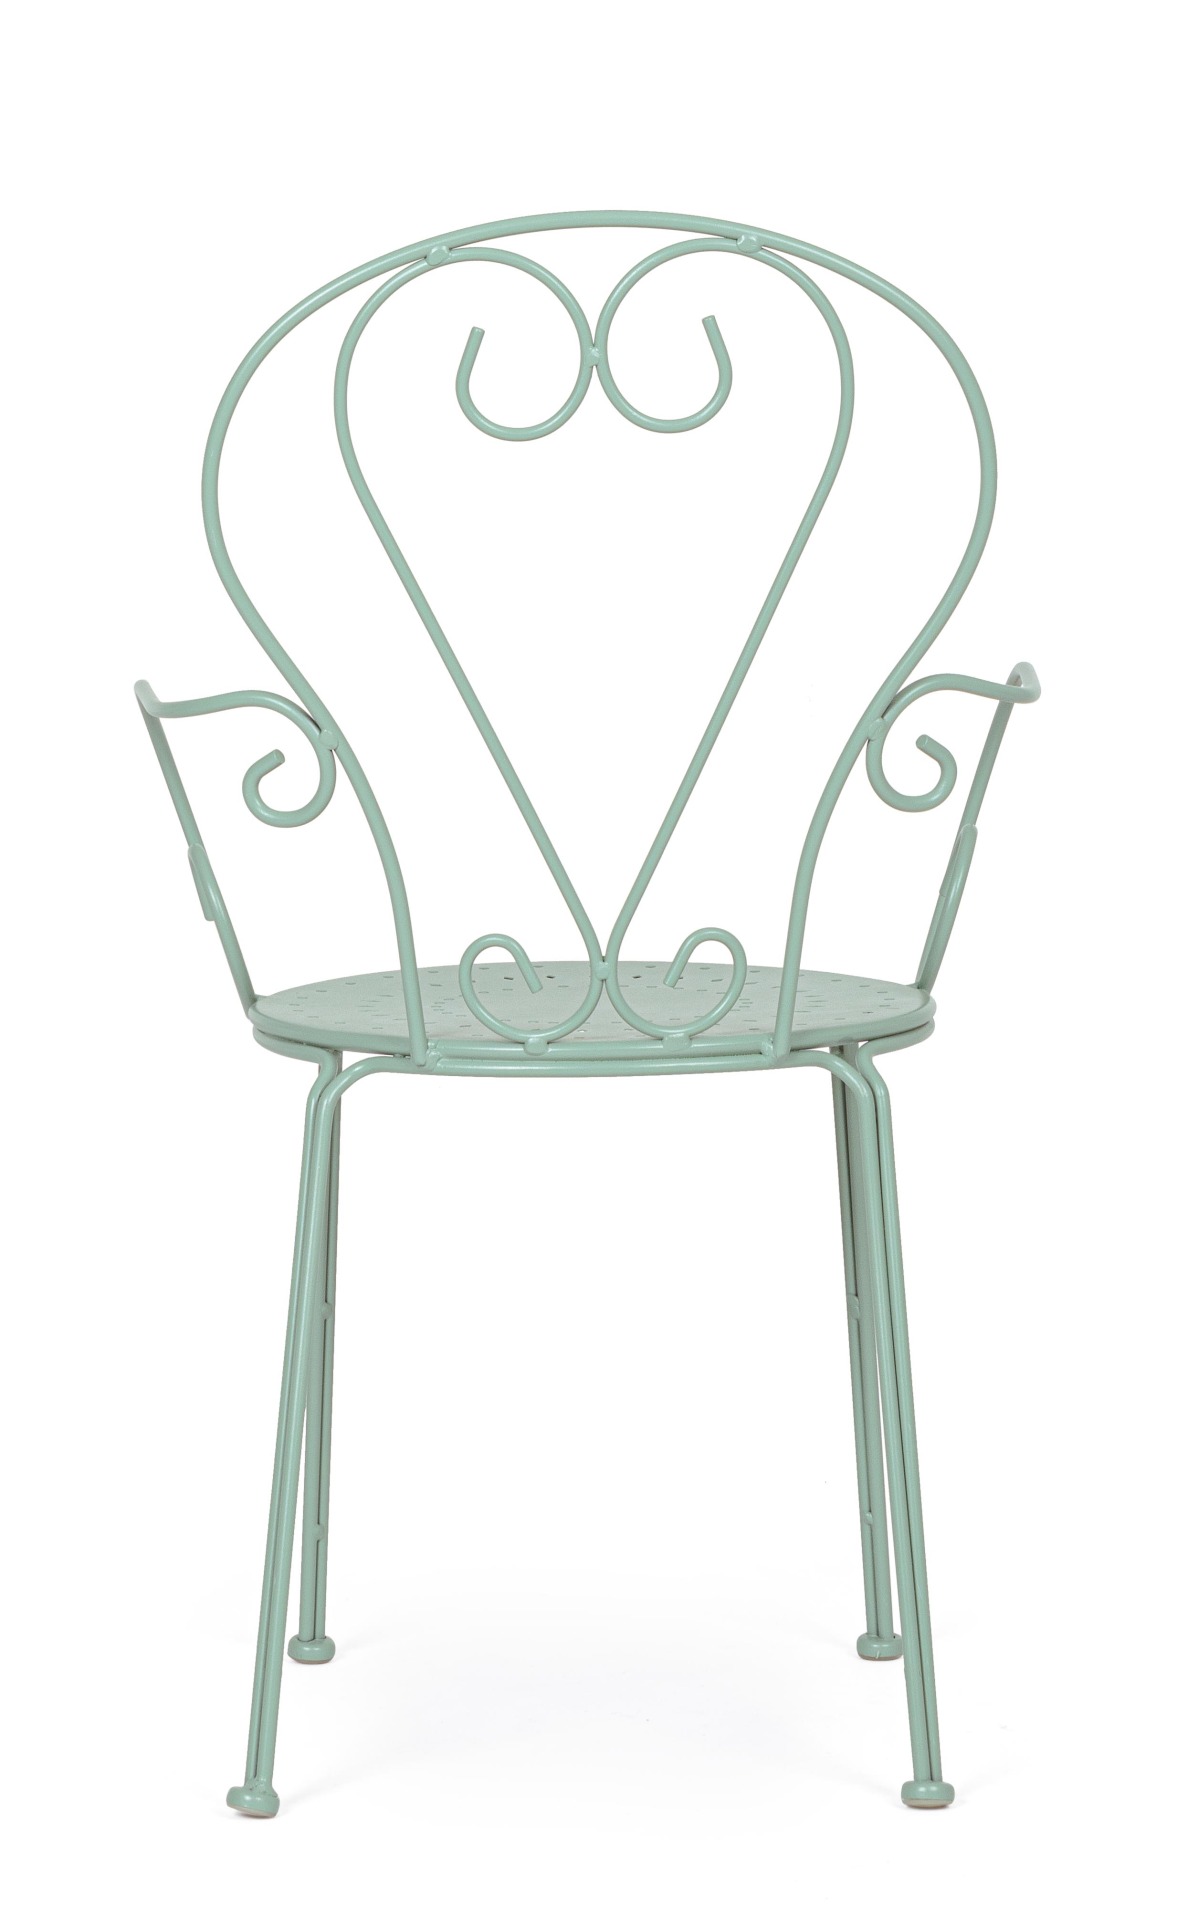 Der Gartenstuhl Etienne überzeugt mit seinem klassischen Design. Gefertigt wurde er aus Aluminium, welches einen grünen Farbton besitzen. Das Gestell ist aus Aluminium und hat eine grüne Farbe. Der Stuhl verfügt über eine Sitzhöhe von 43 cm und ist für de